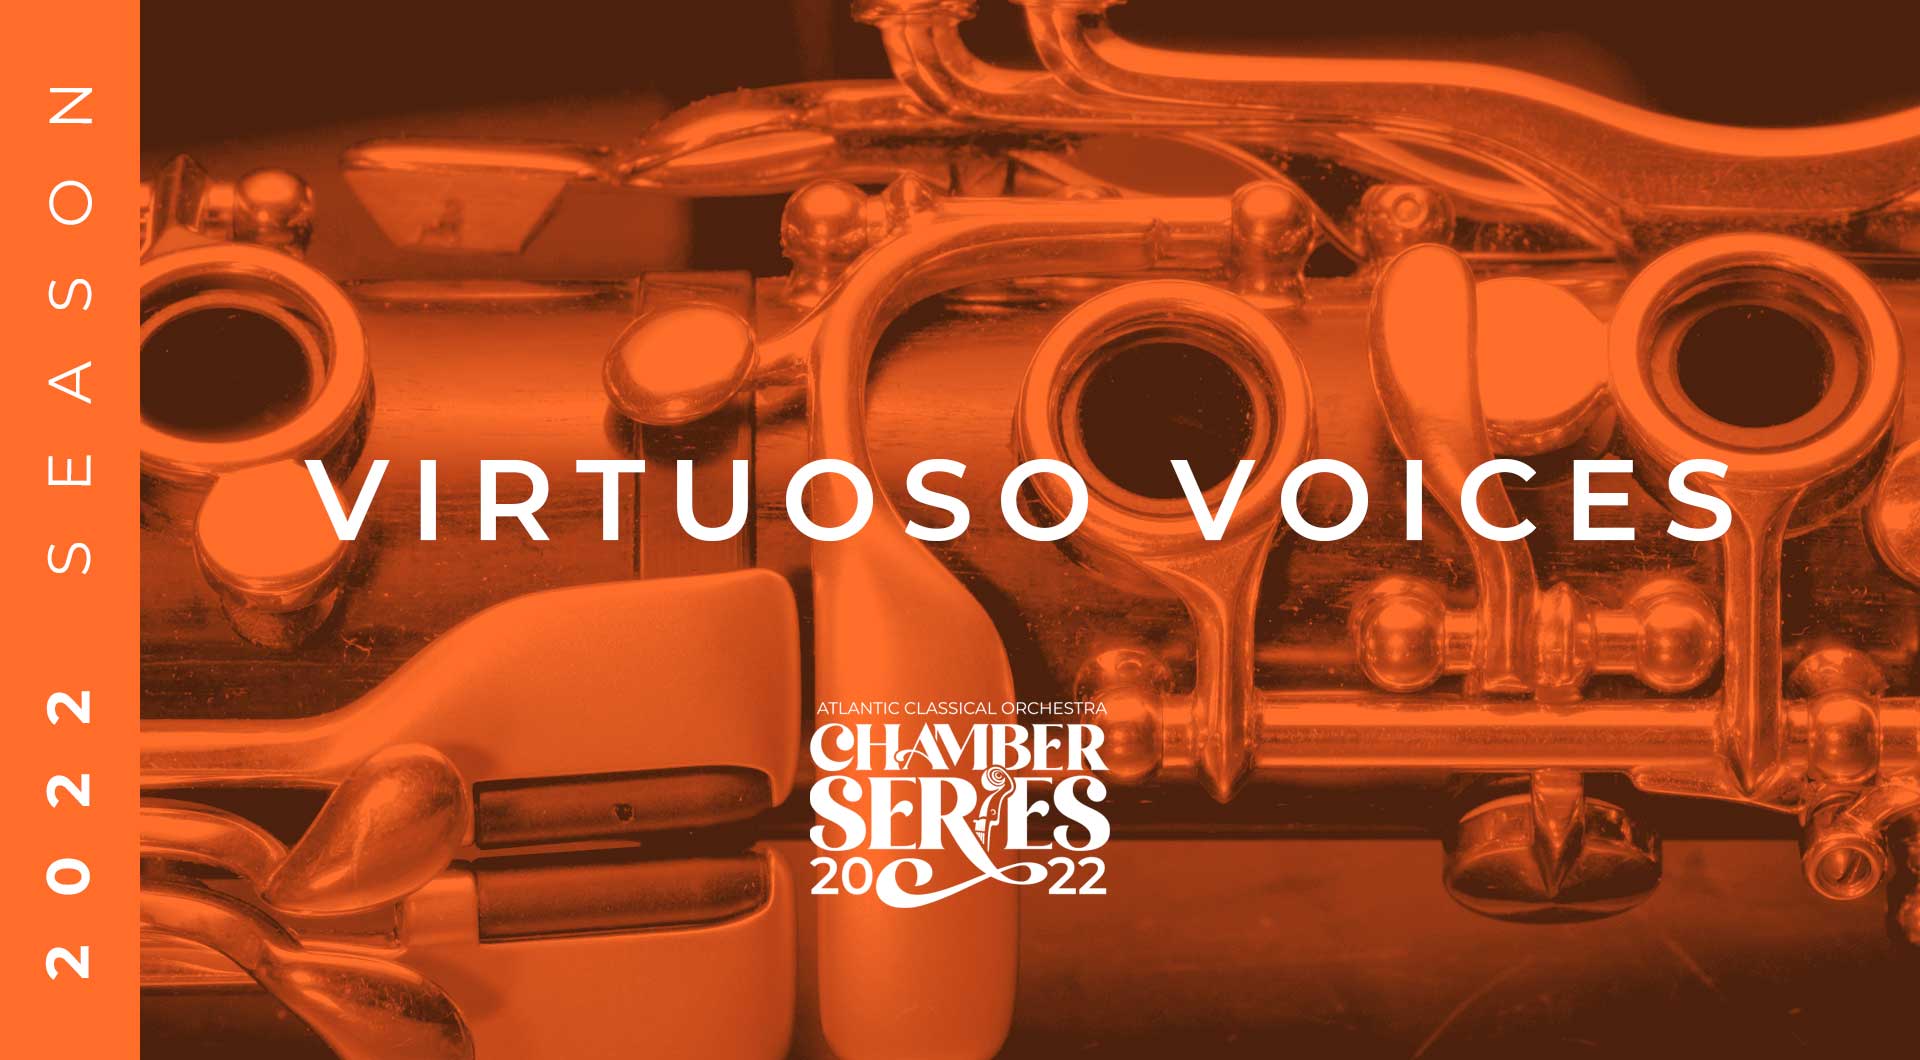 Virtuoso Voices